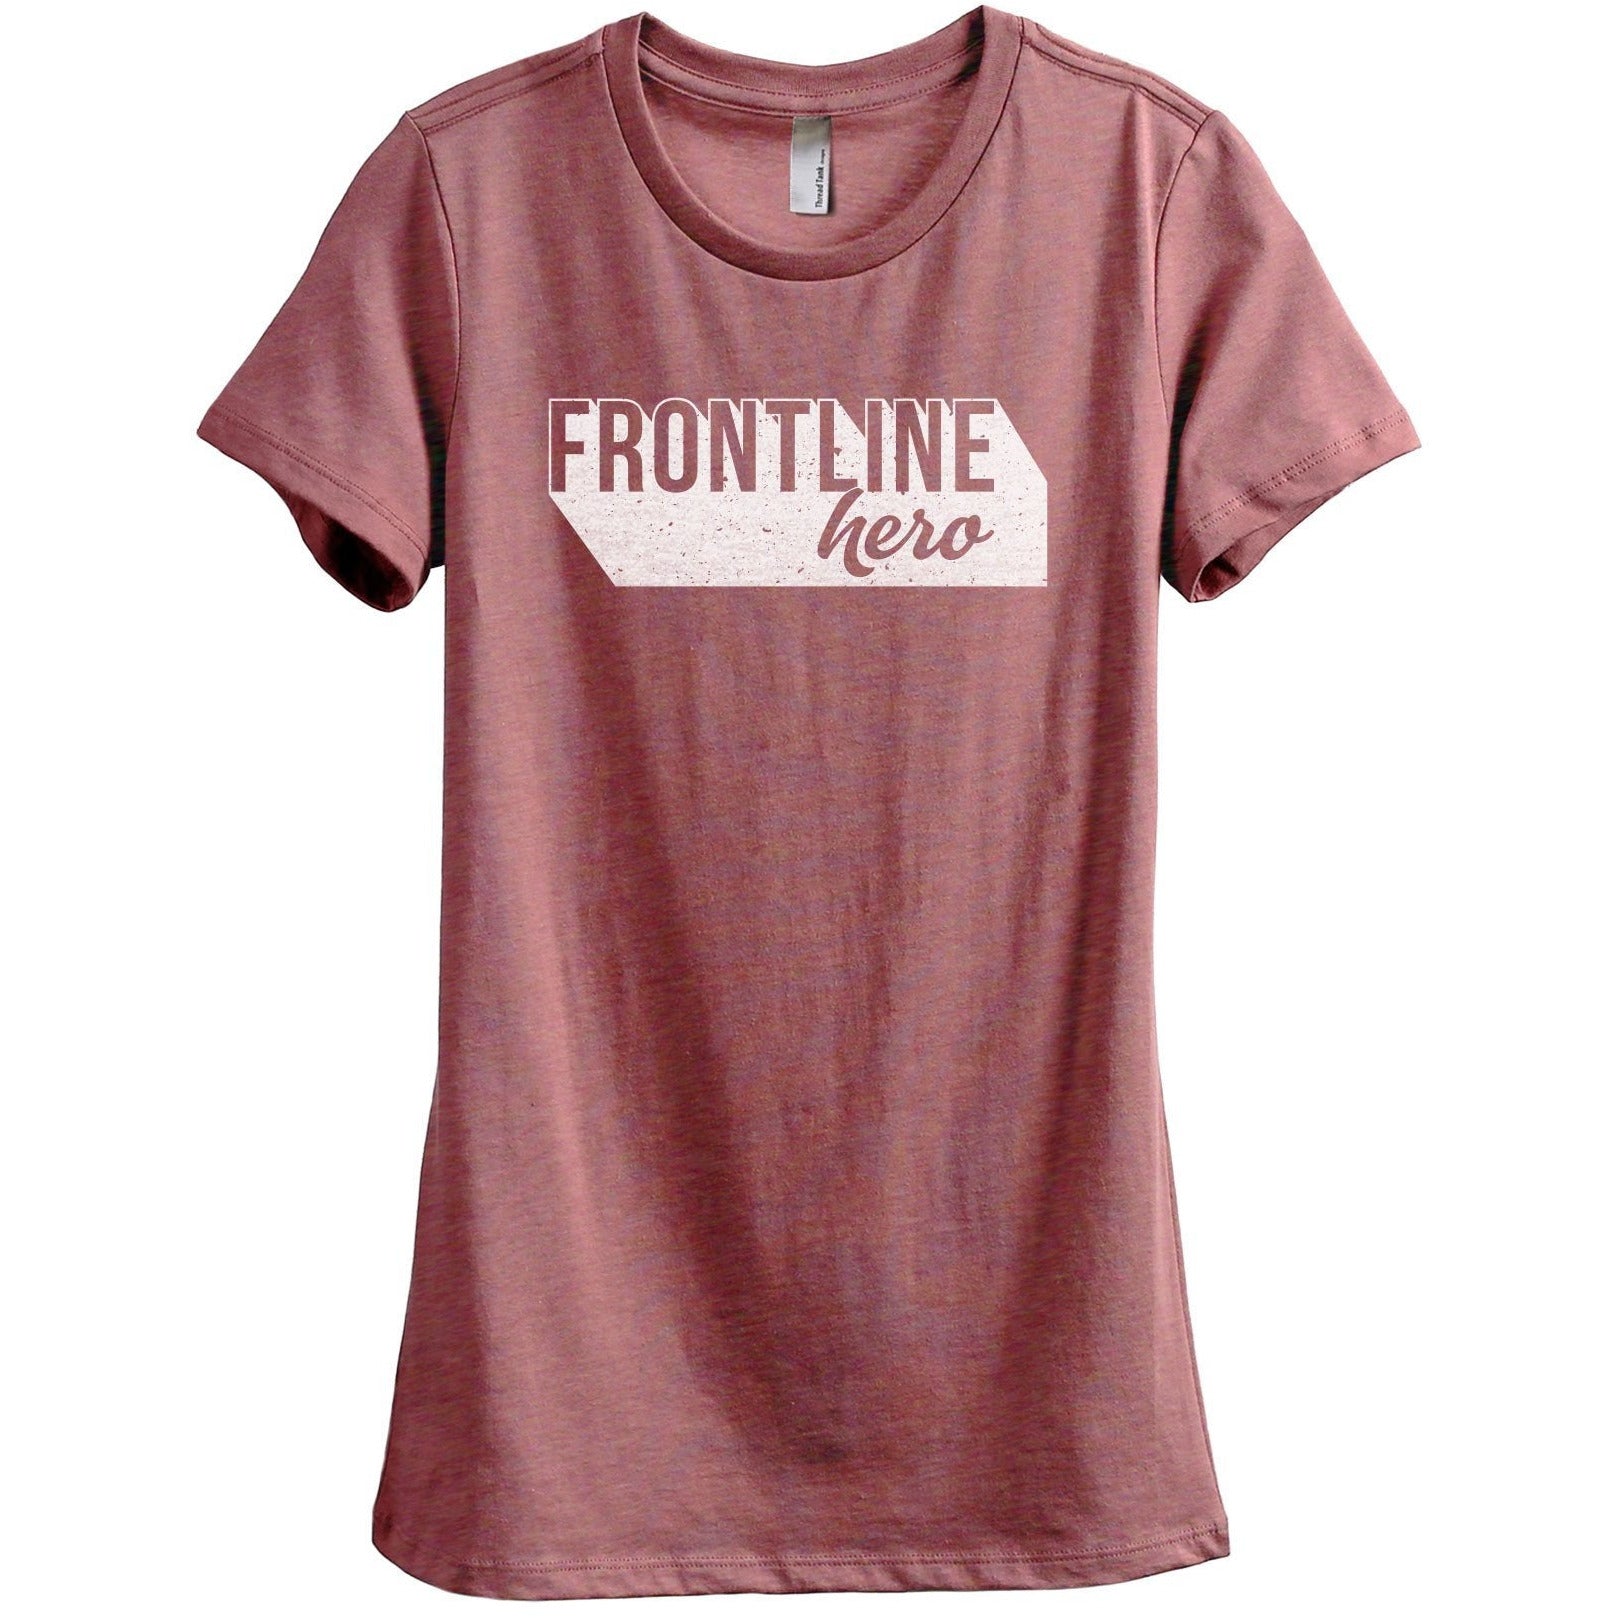 Frontline Hero Women's Relaxed Crewneck T-Shirt Top Tee Heather Rouge